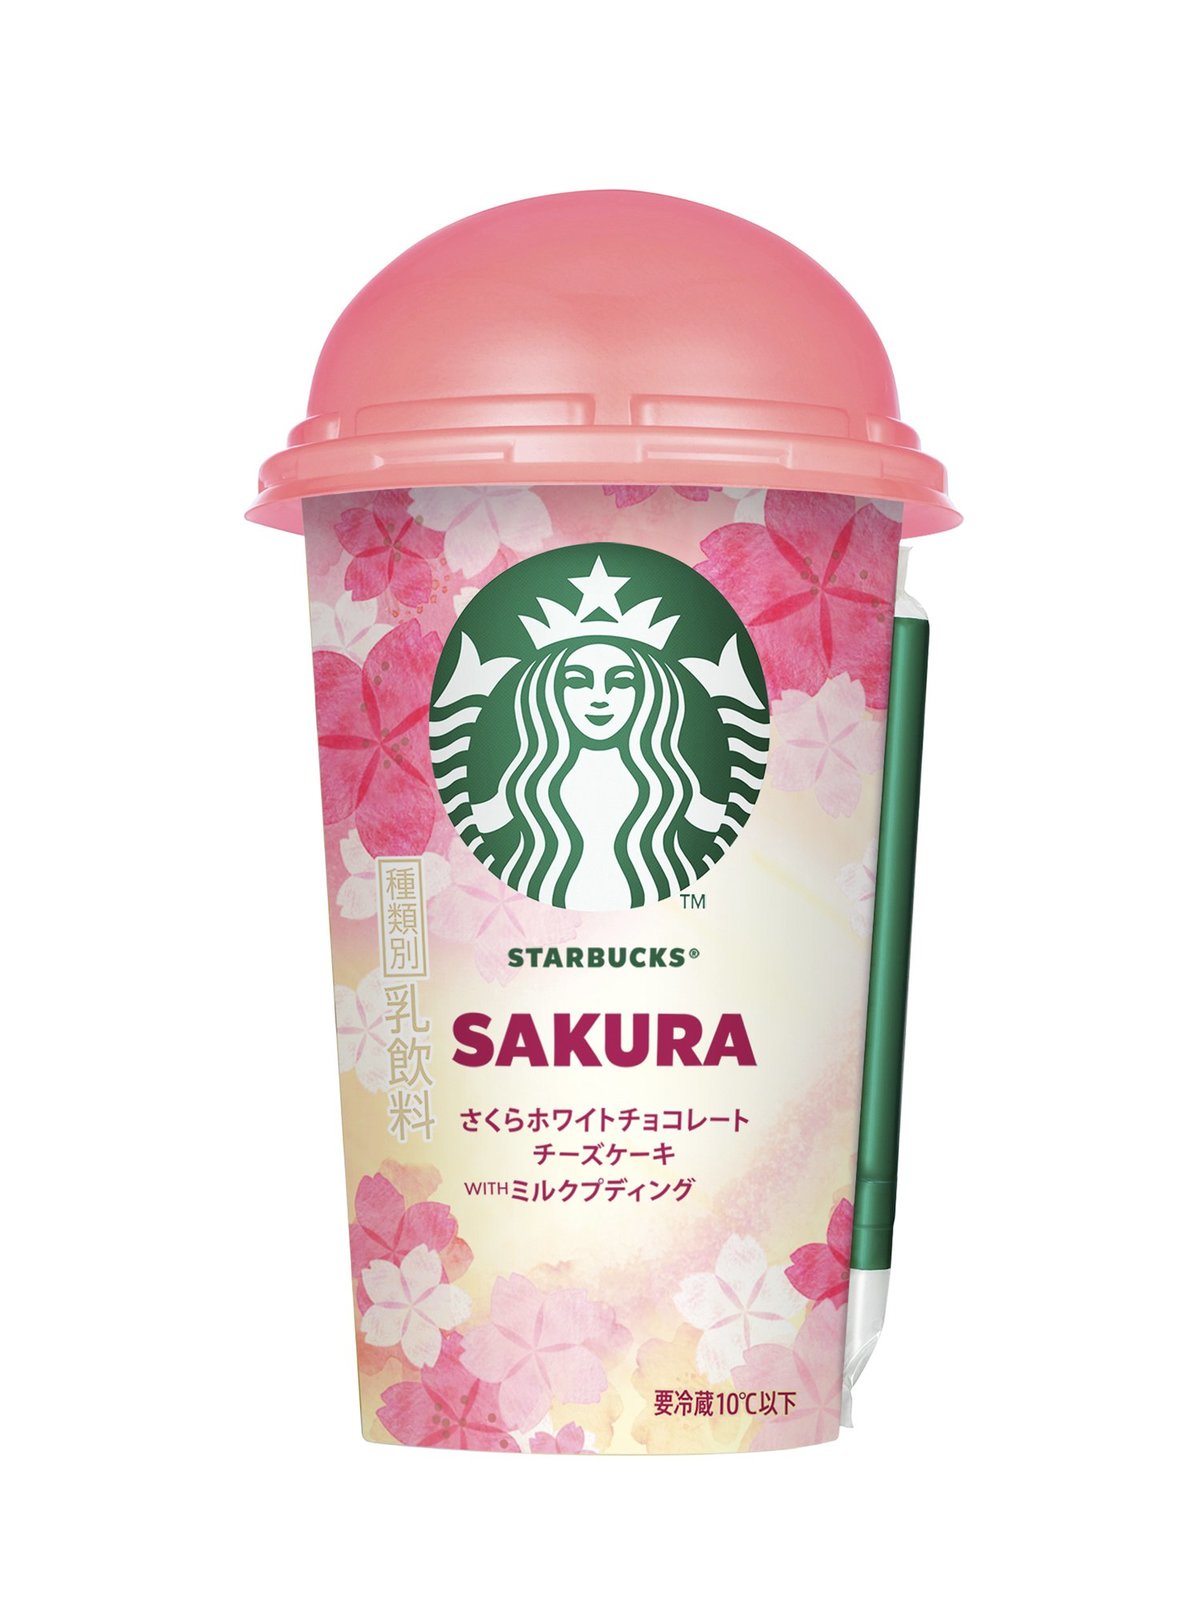 Starbucks Sakura White Chocolate Cheesecake with Milk Pudding 2020 sakura cherry blossom snacks japan